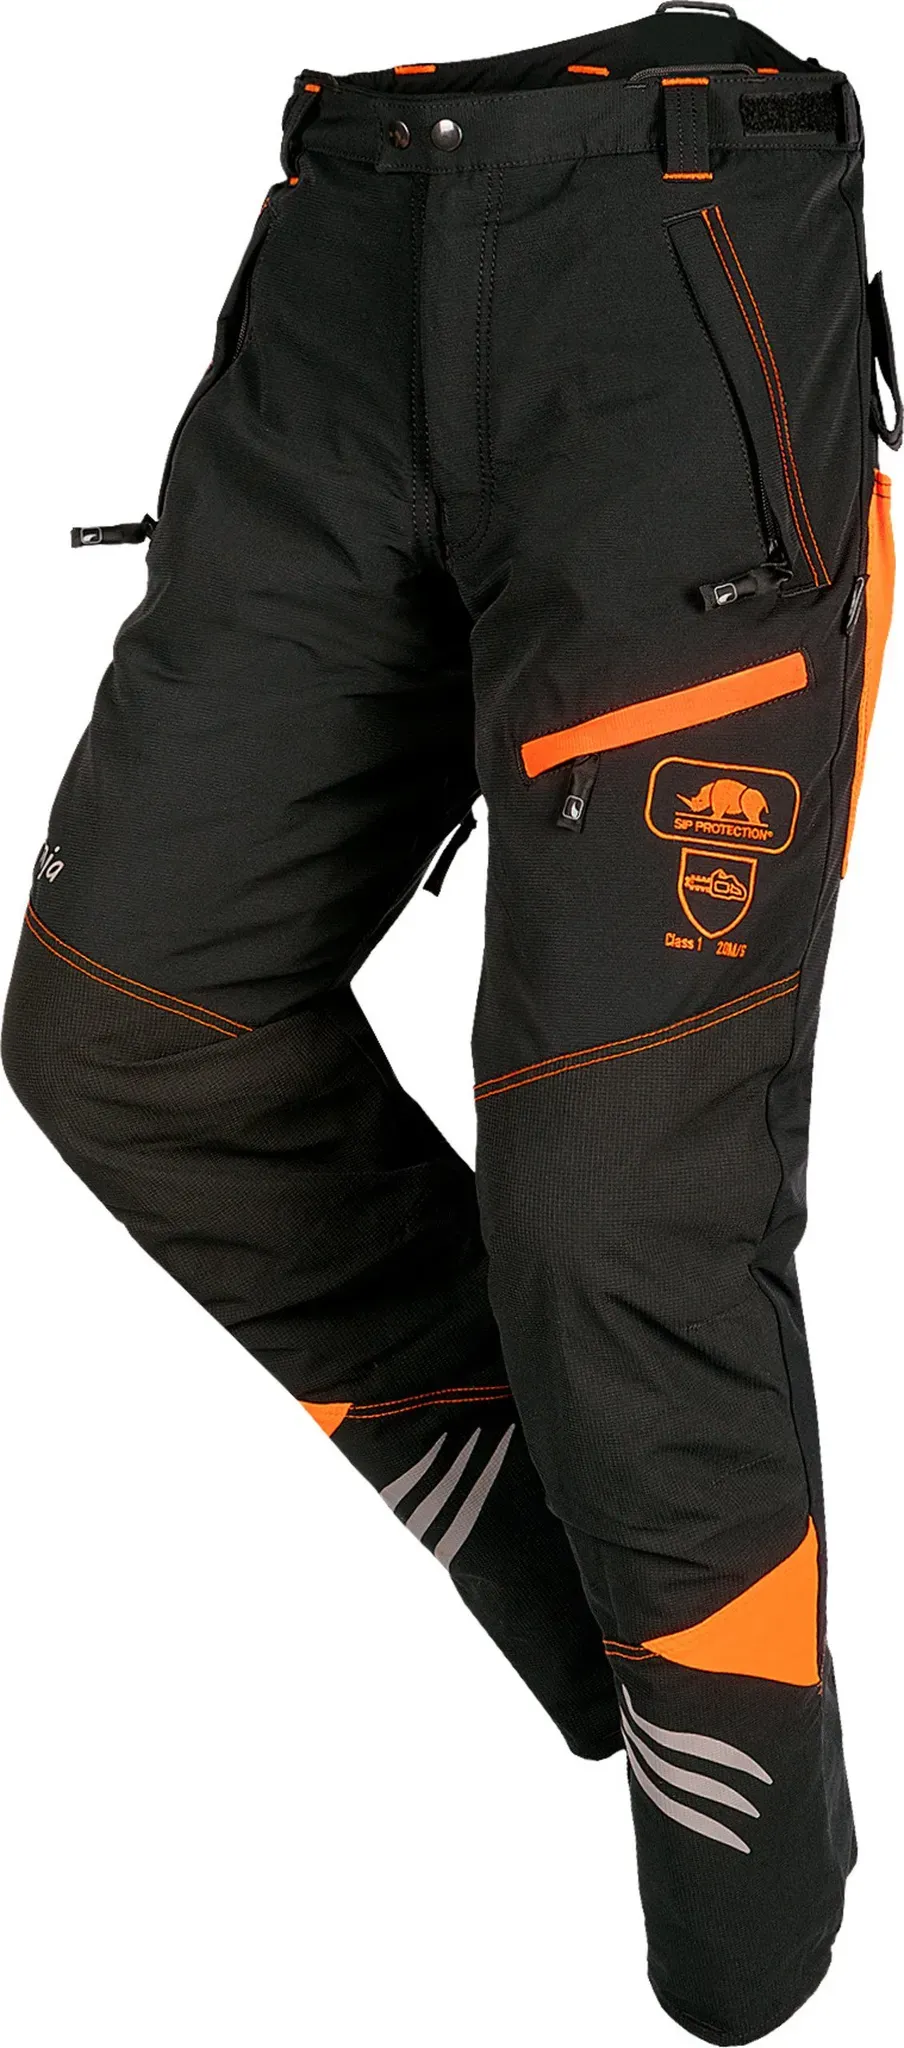 SIP Protection Schnittschutz-Bundhose Ninja, schwarz-leuchtorange, XL - 7 cm